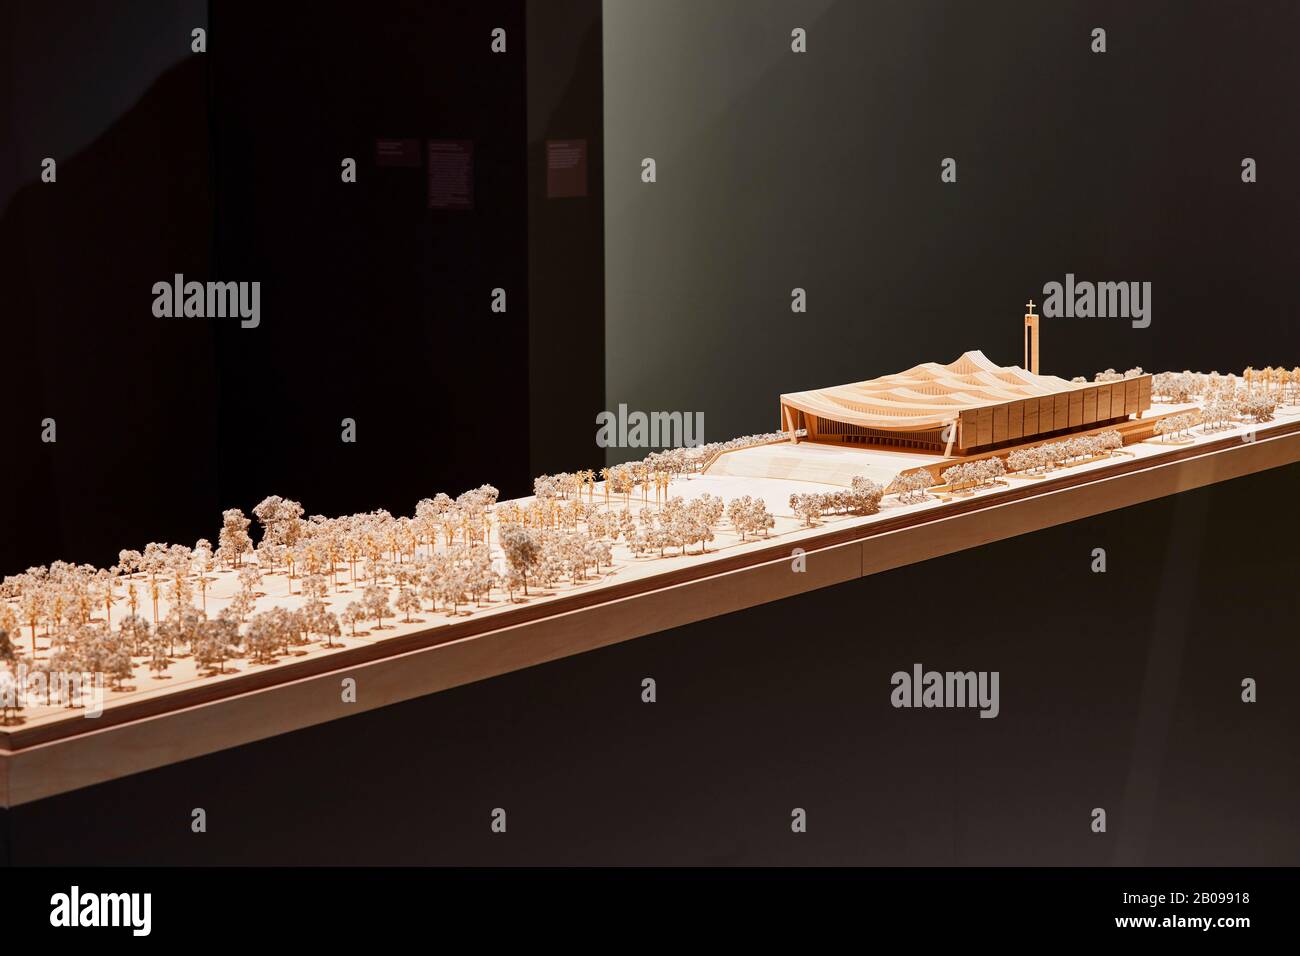 Scale model. Making Memory Exhibition, London, United Kingdom. Architect: Adjaye Associates , 2019. Stock Photo